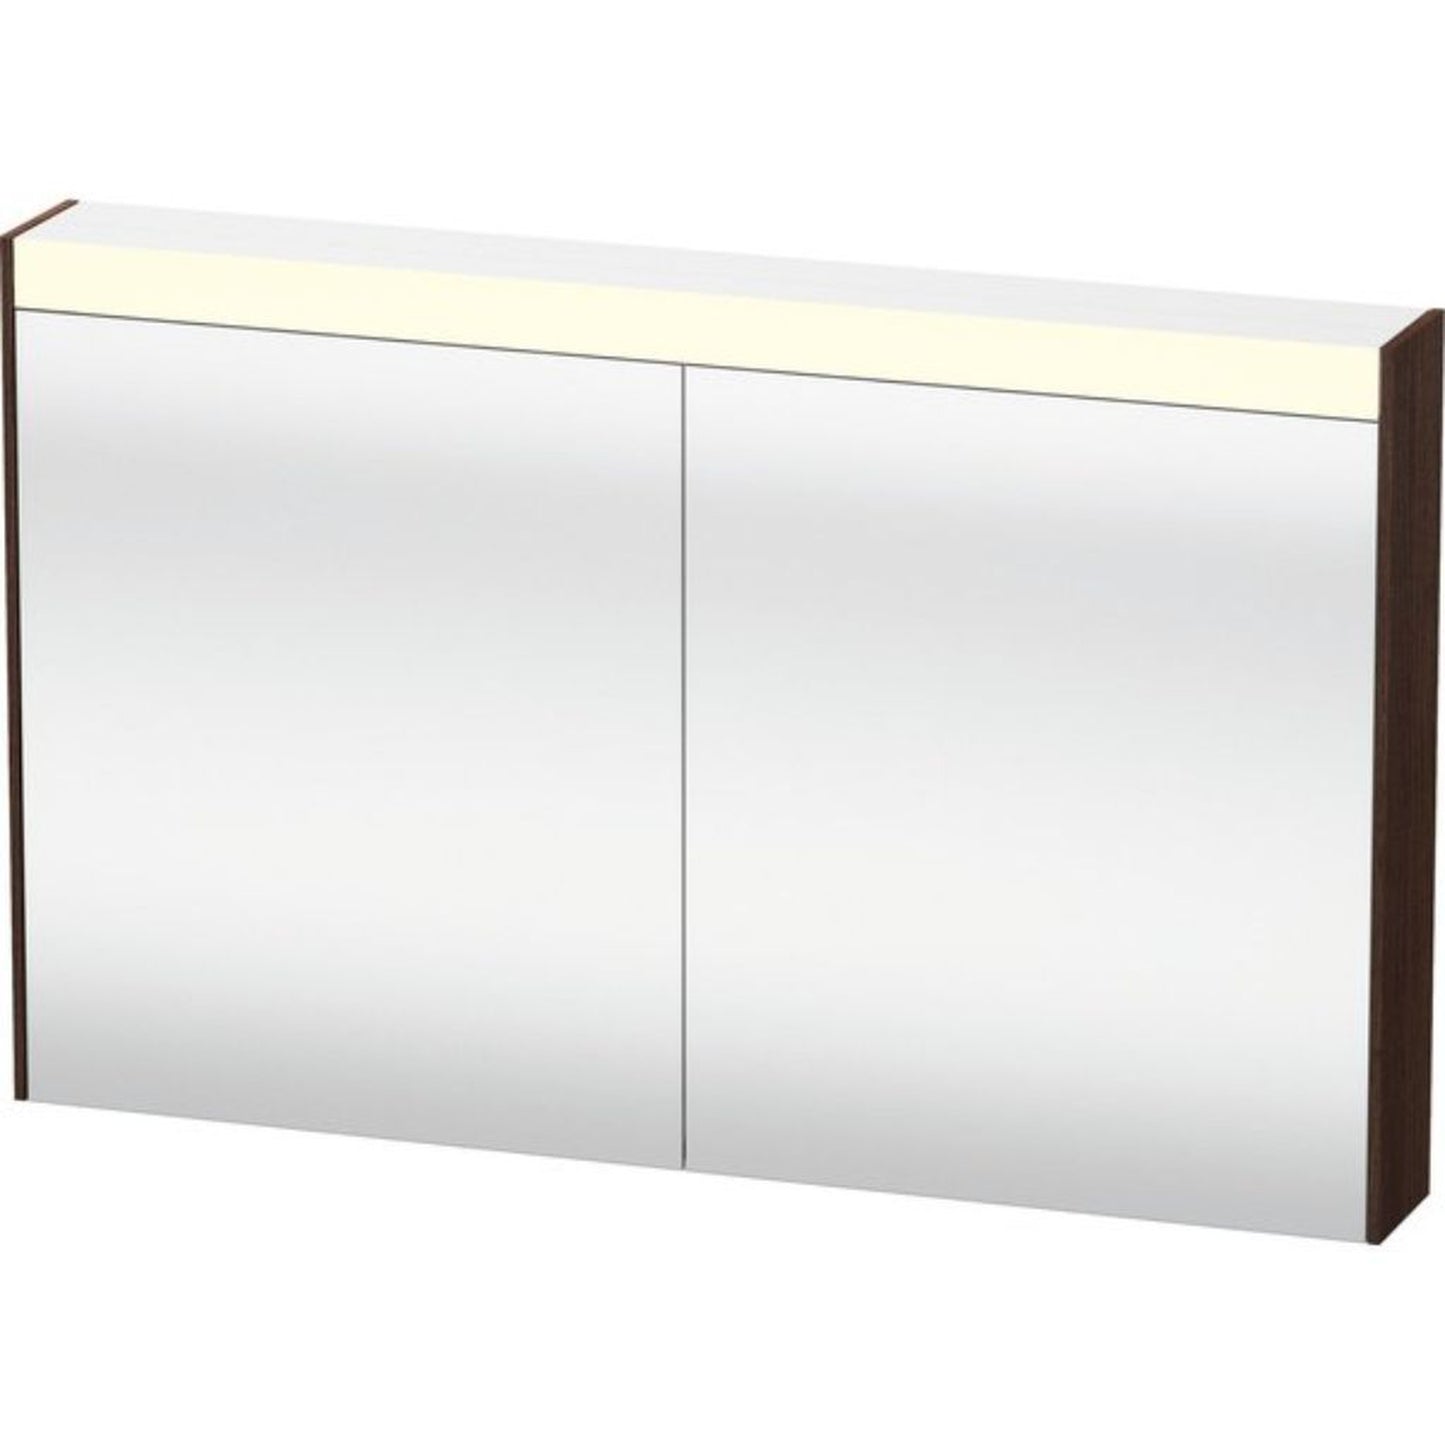 Duravit Brioso 40" x 30" x 6" Mirror Cabinet With Lighting Chestnut Dark